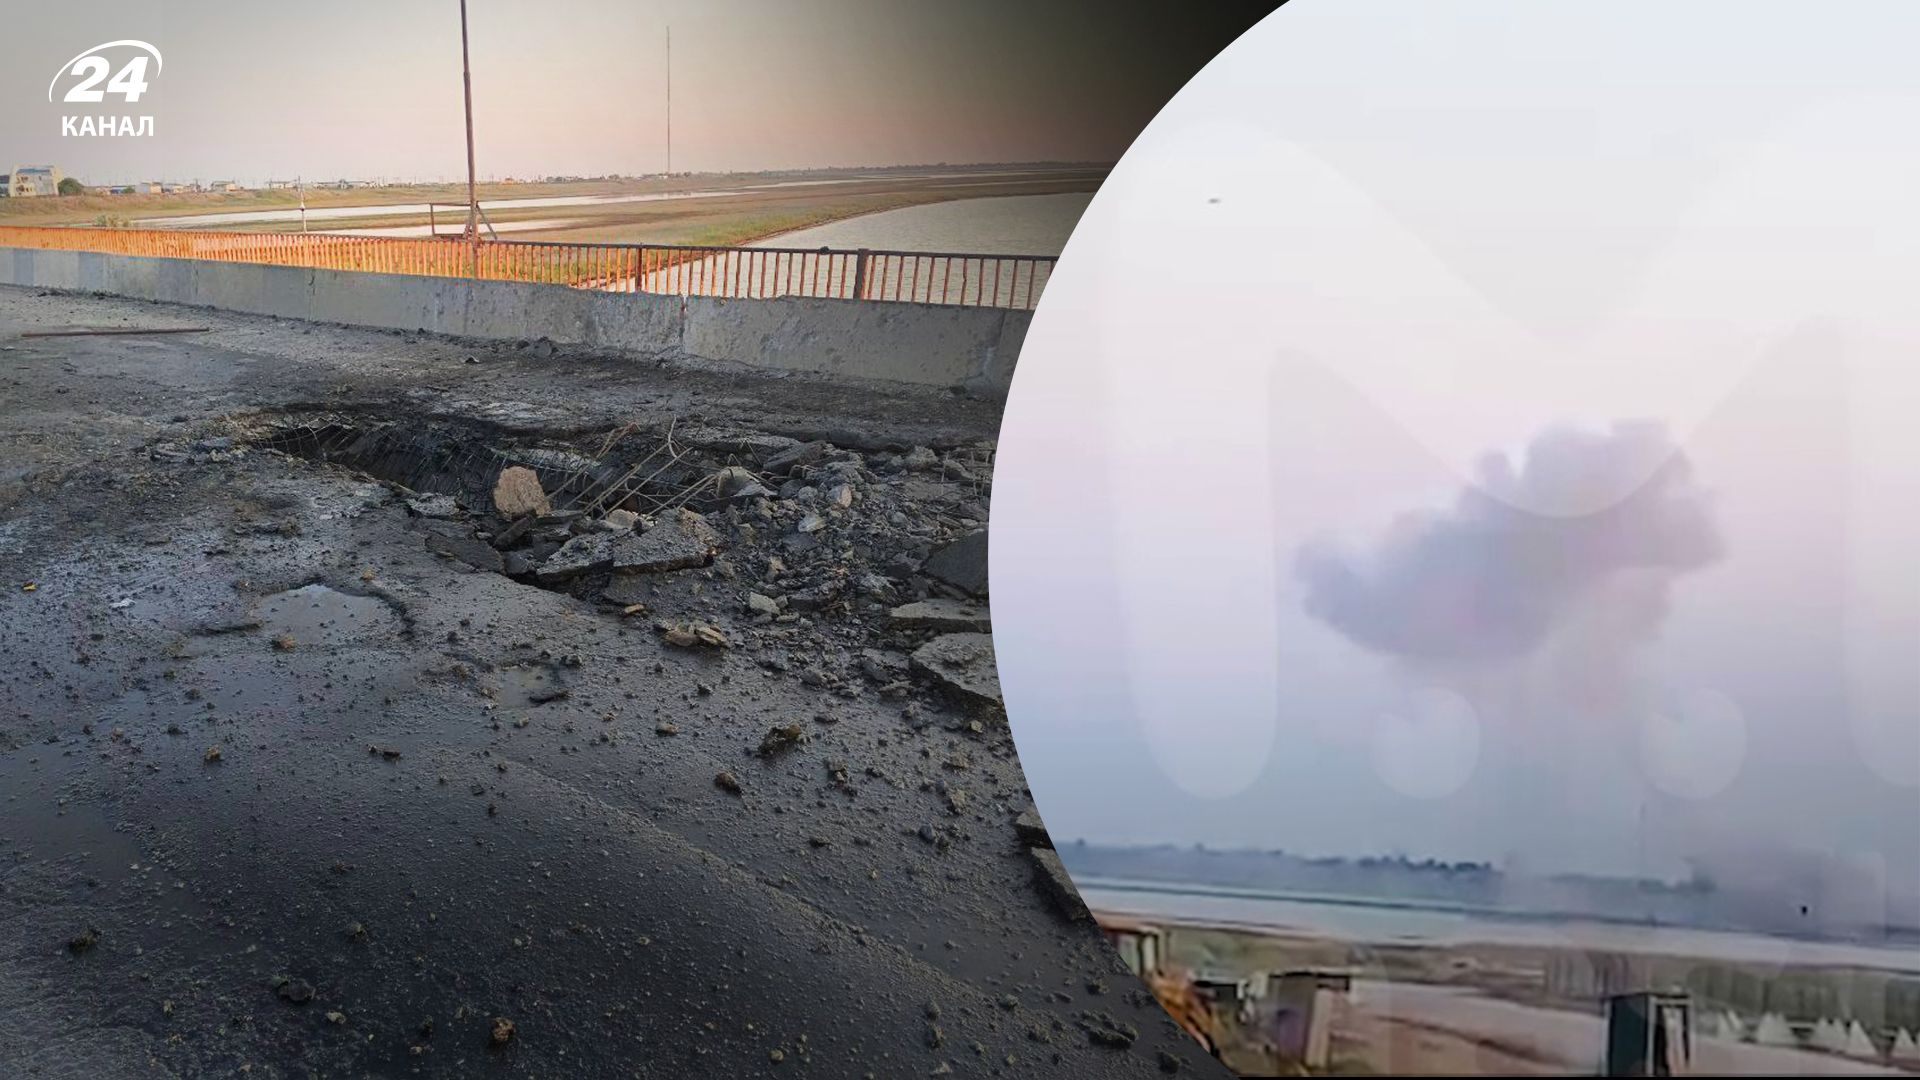 "Ох**неть": в сети появились первые кадры с Чонгарского моста после прилета - 24 Канал